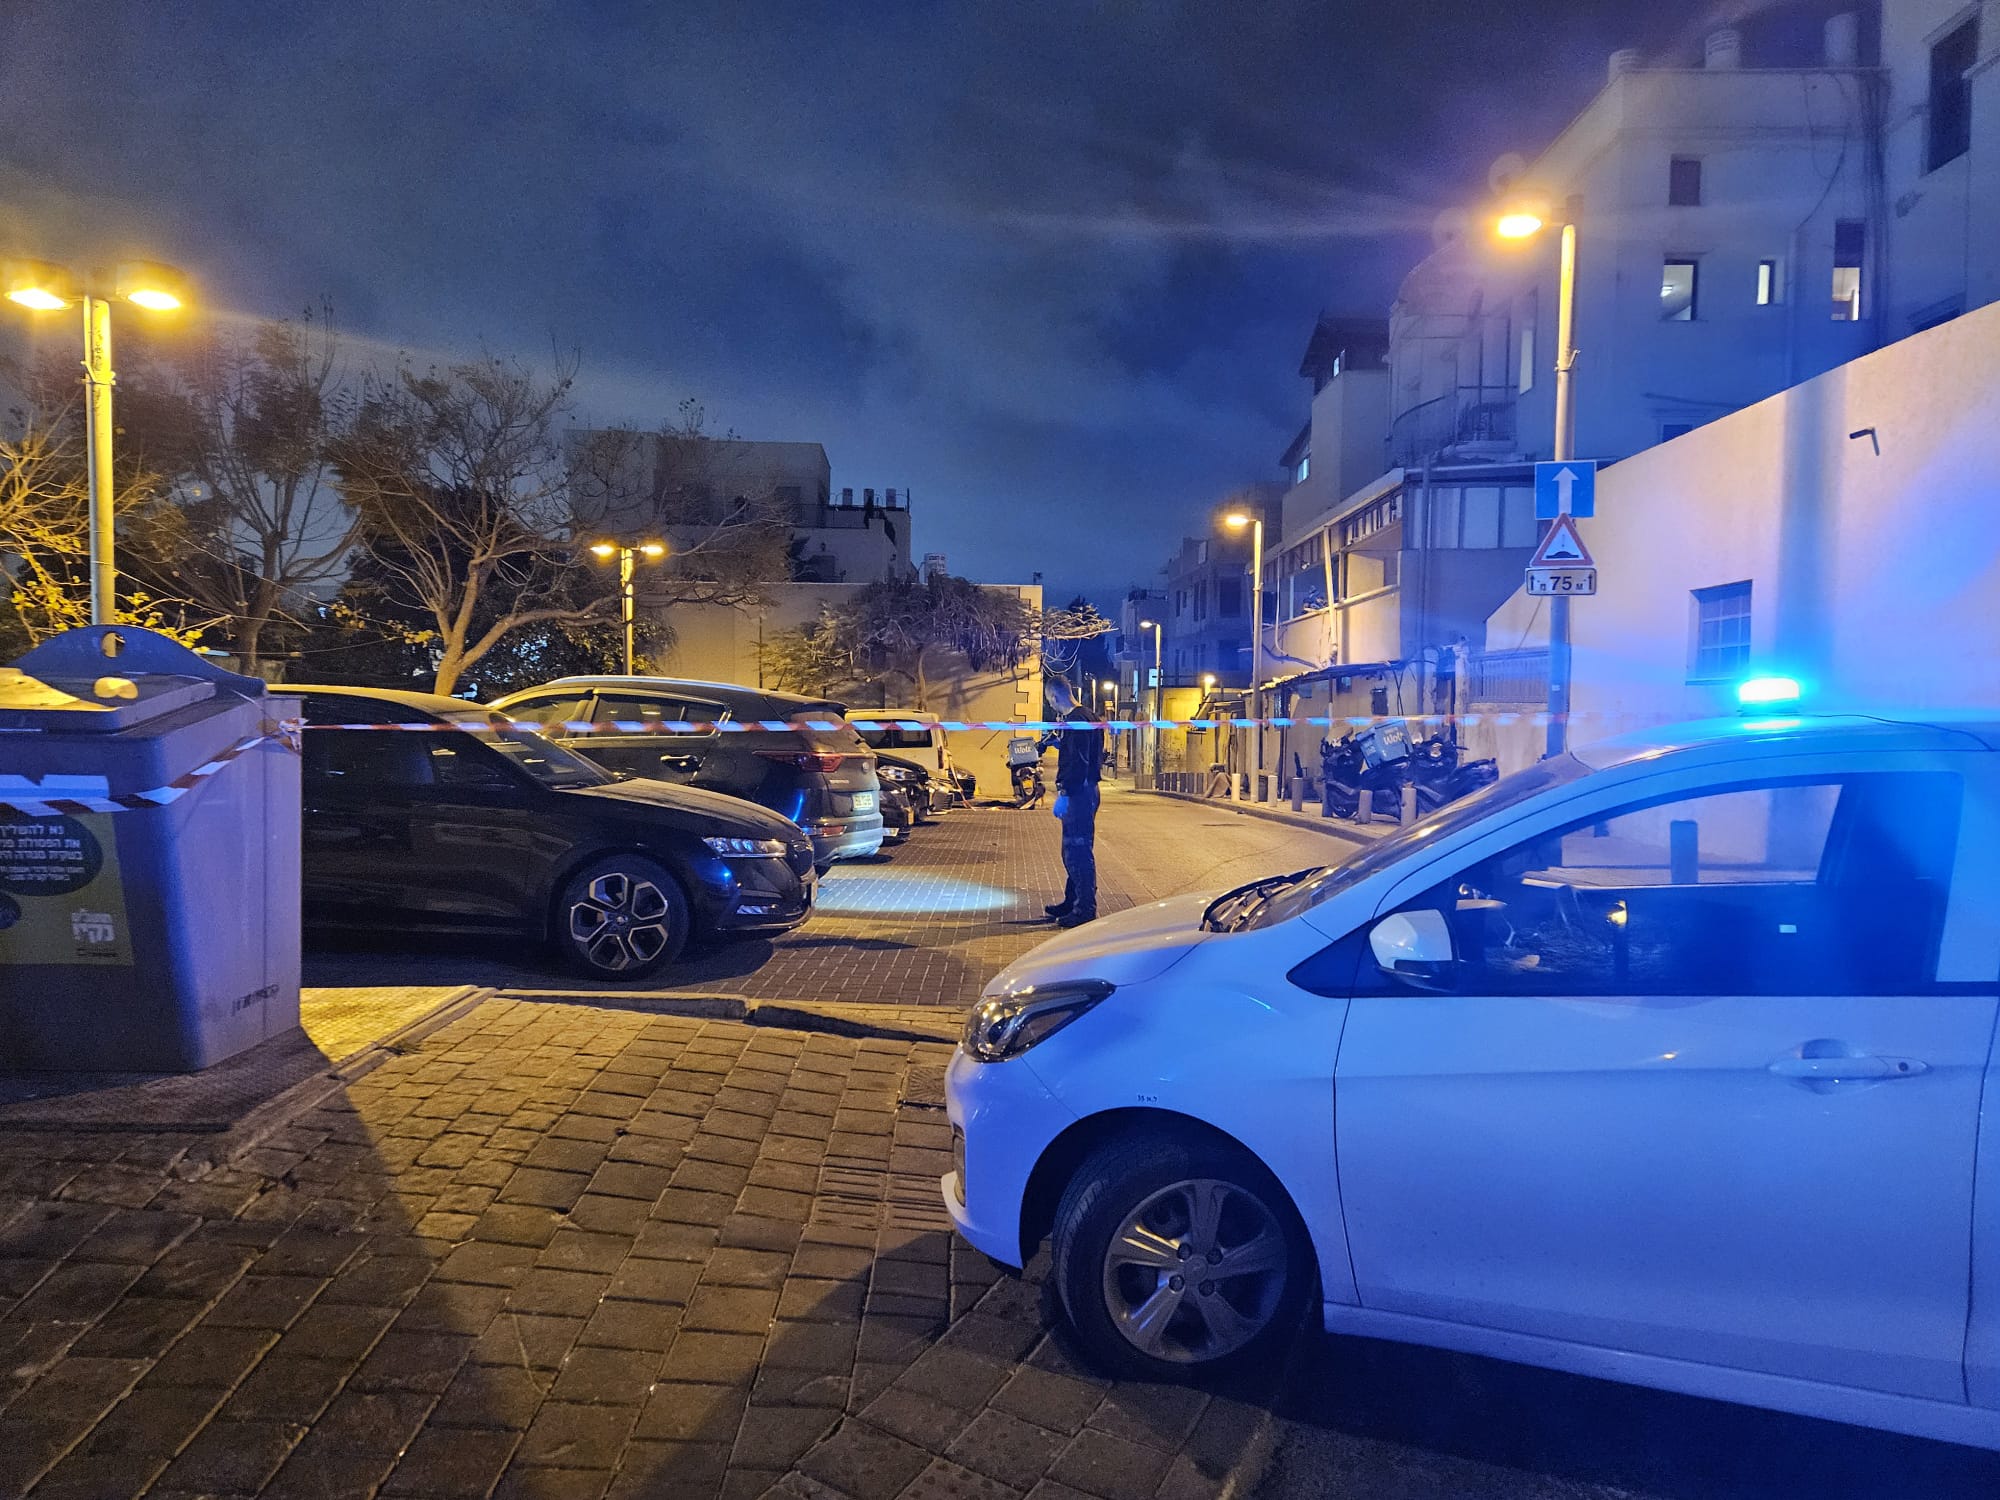 يافا: الشرطة تغلق شوارع في يافا وتعلن اعتقال شابين على خلفية حادثة القتل مساء الاثنين